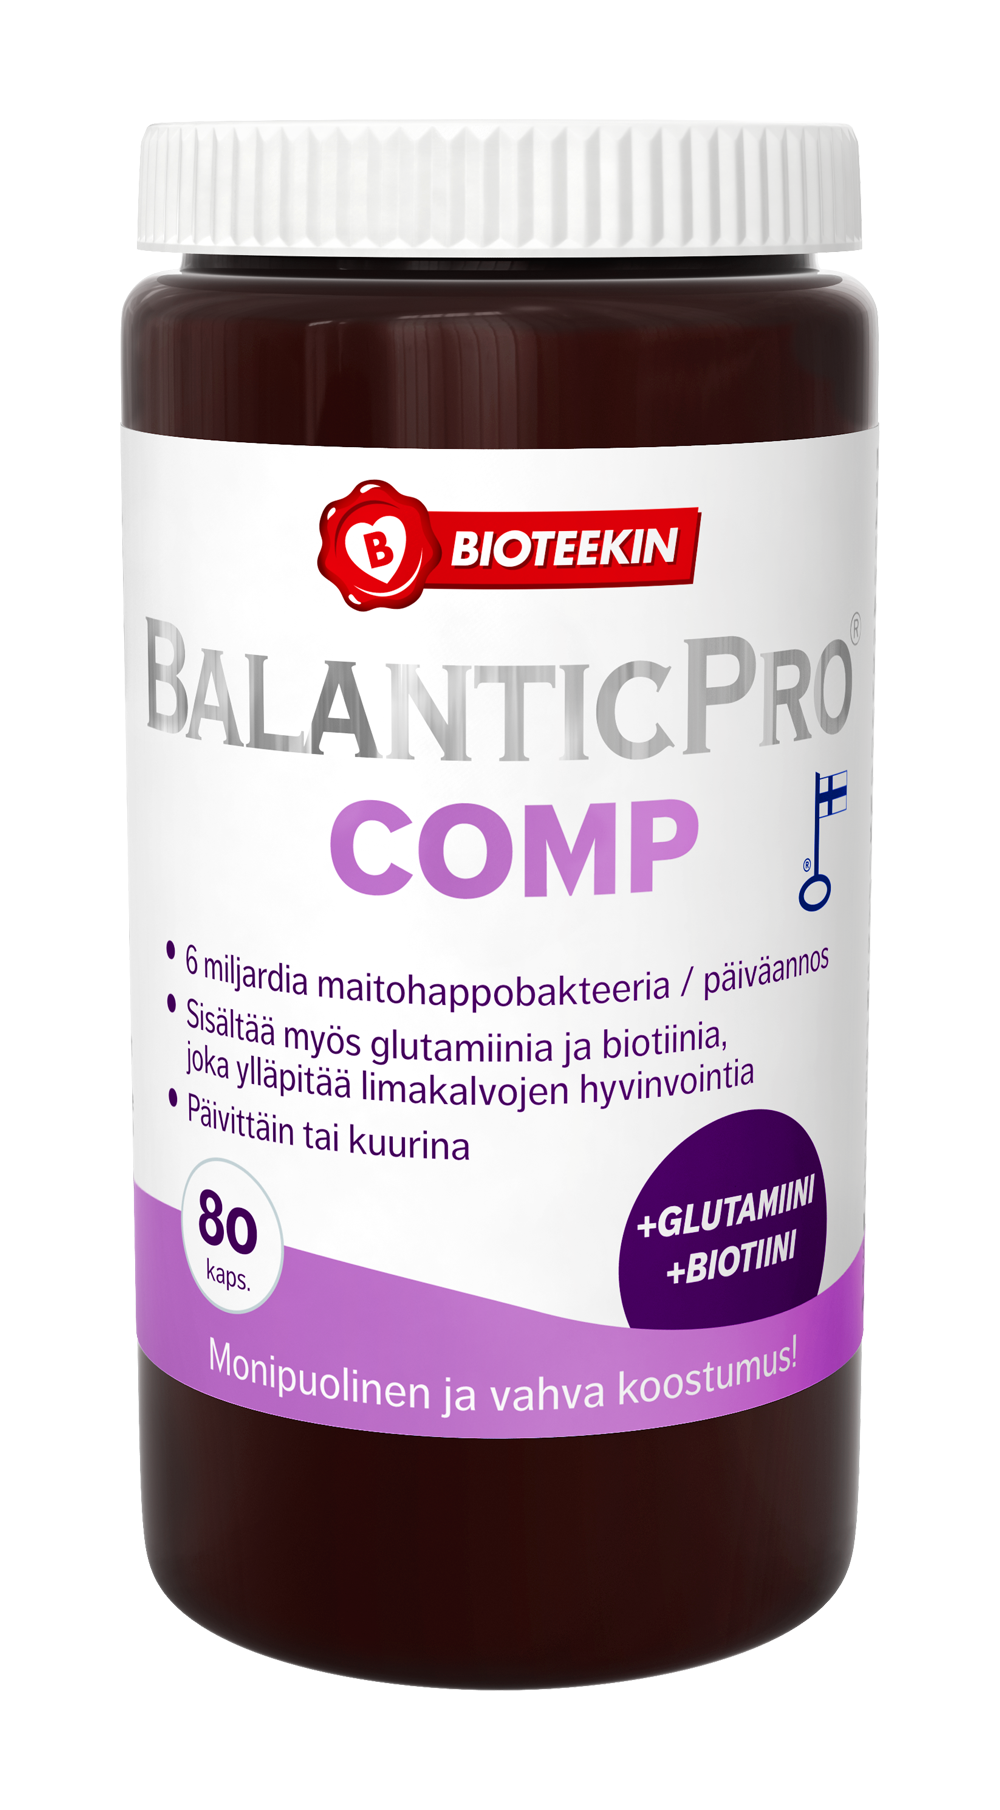 Bioteekin BalanticPro Comp - Maitohappobakteerivalmiste 80 kaps. - erä